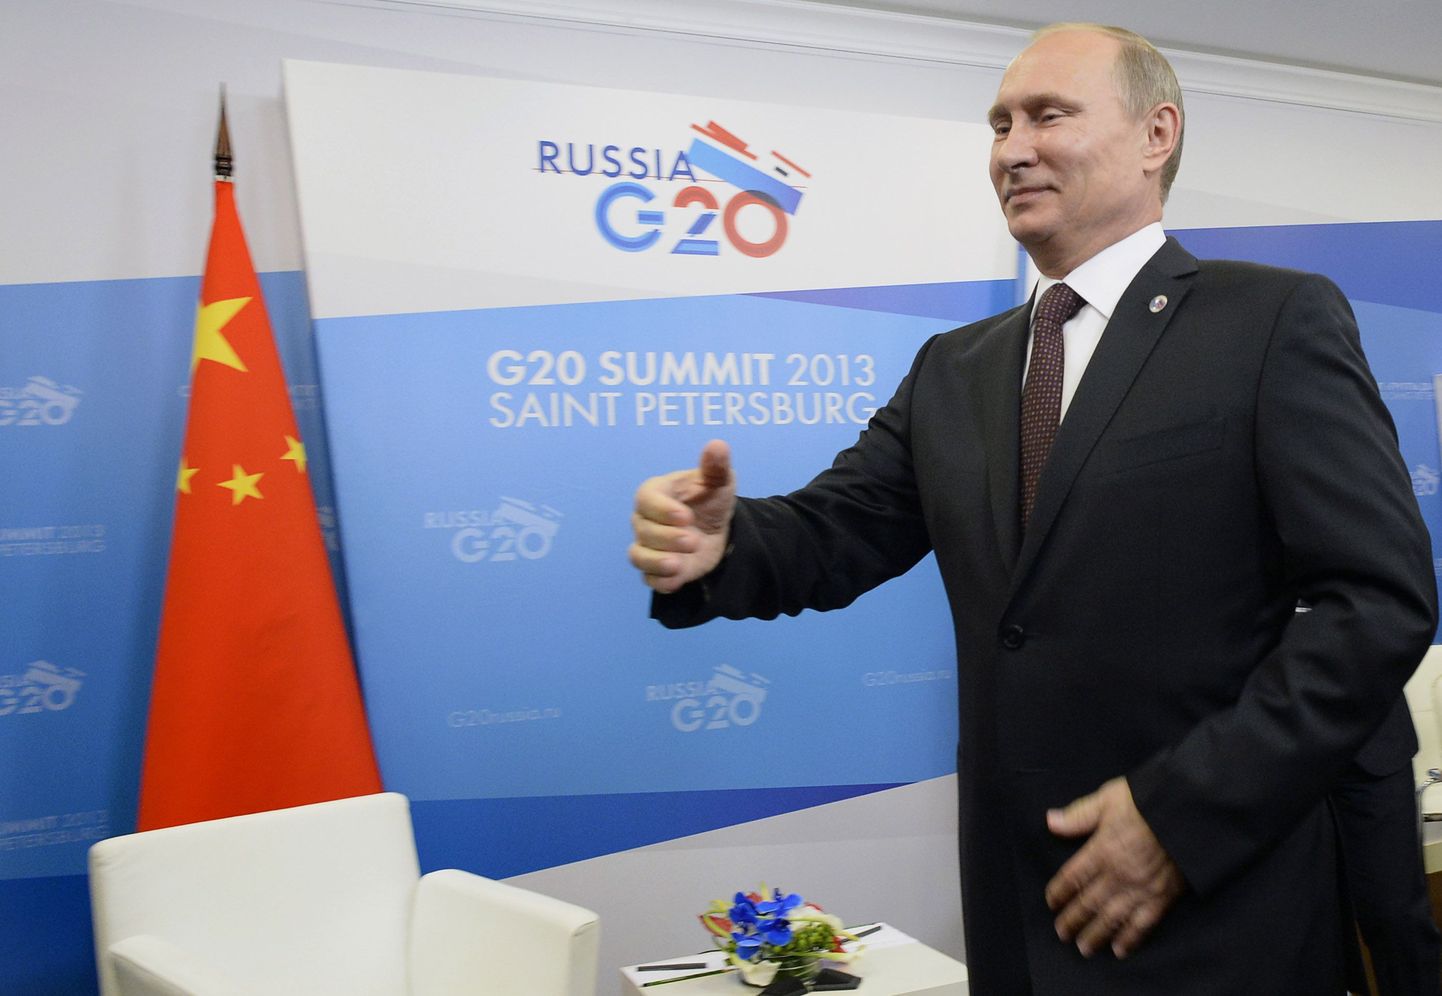 Täna võõrustab Venemaa president Vladimir Putin ametivendi G20 kohtumisel, kus kindlasti tuleb kõne alla ka Süüria probleemistik.